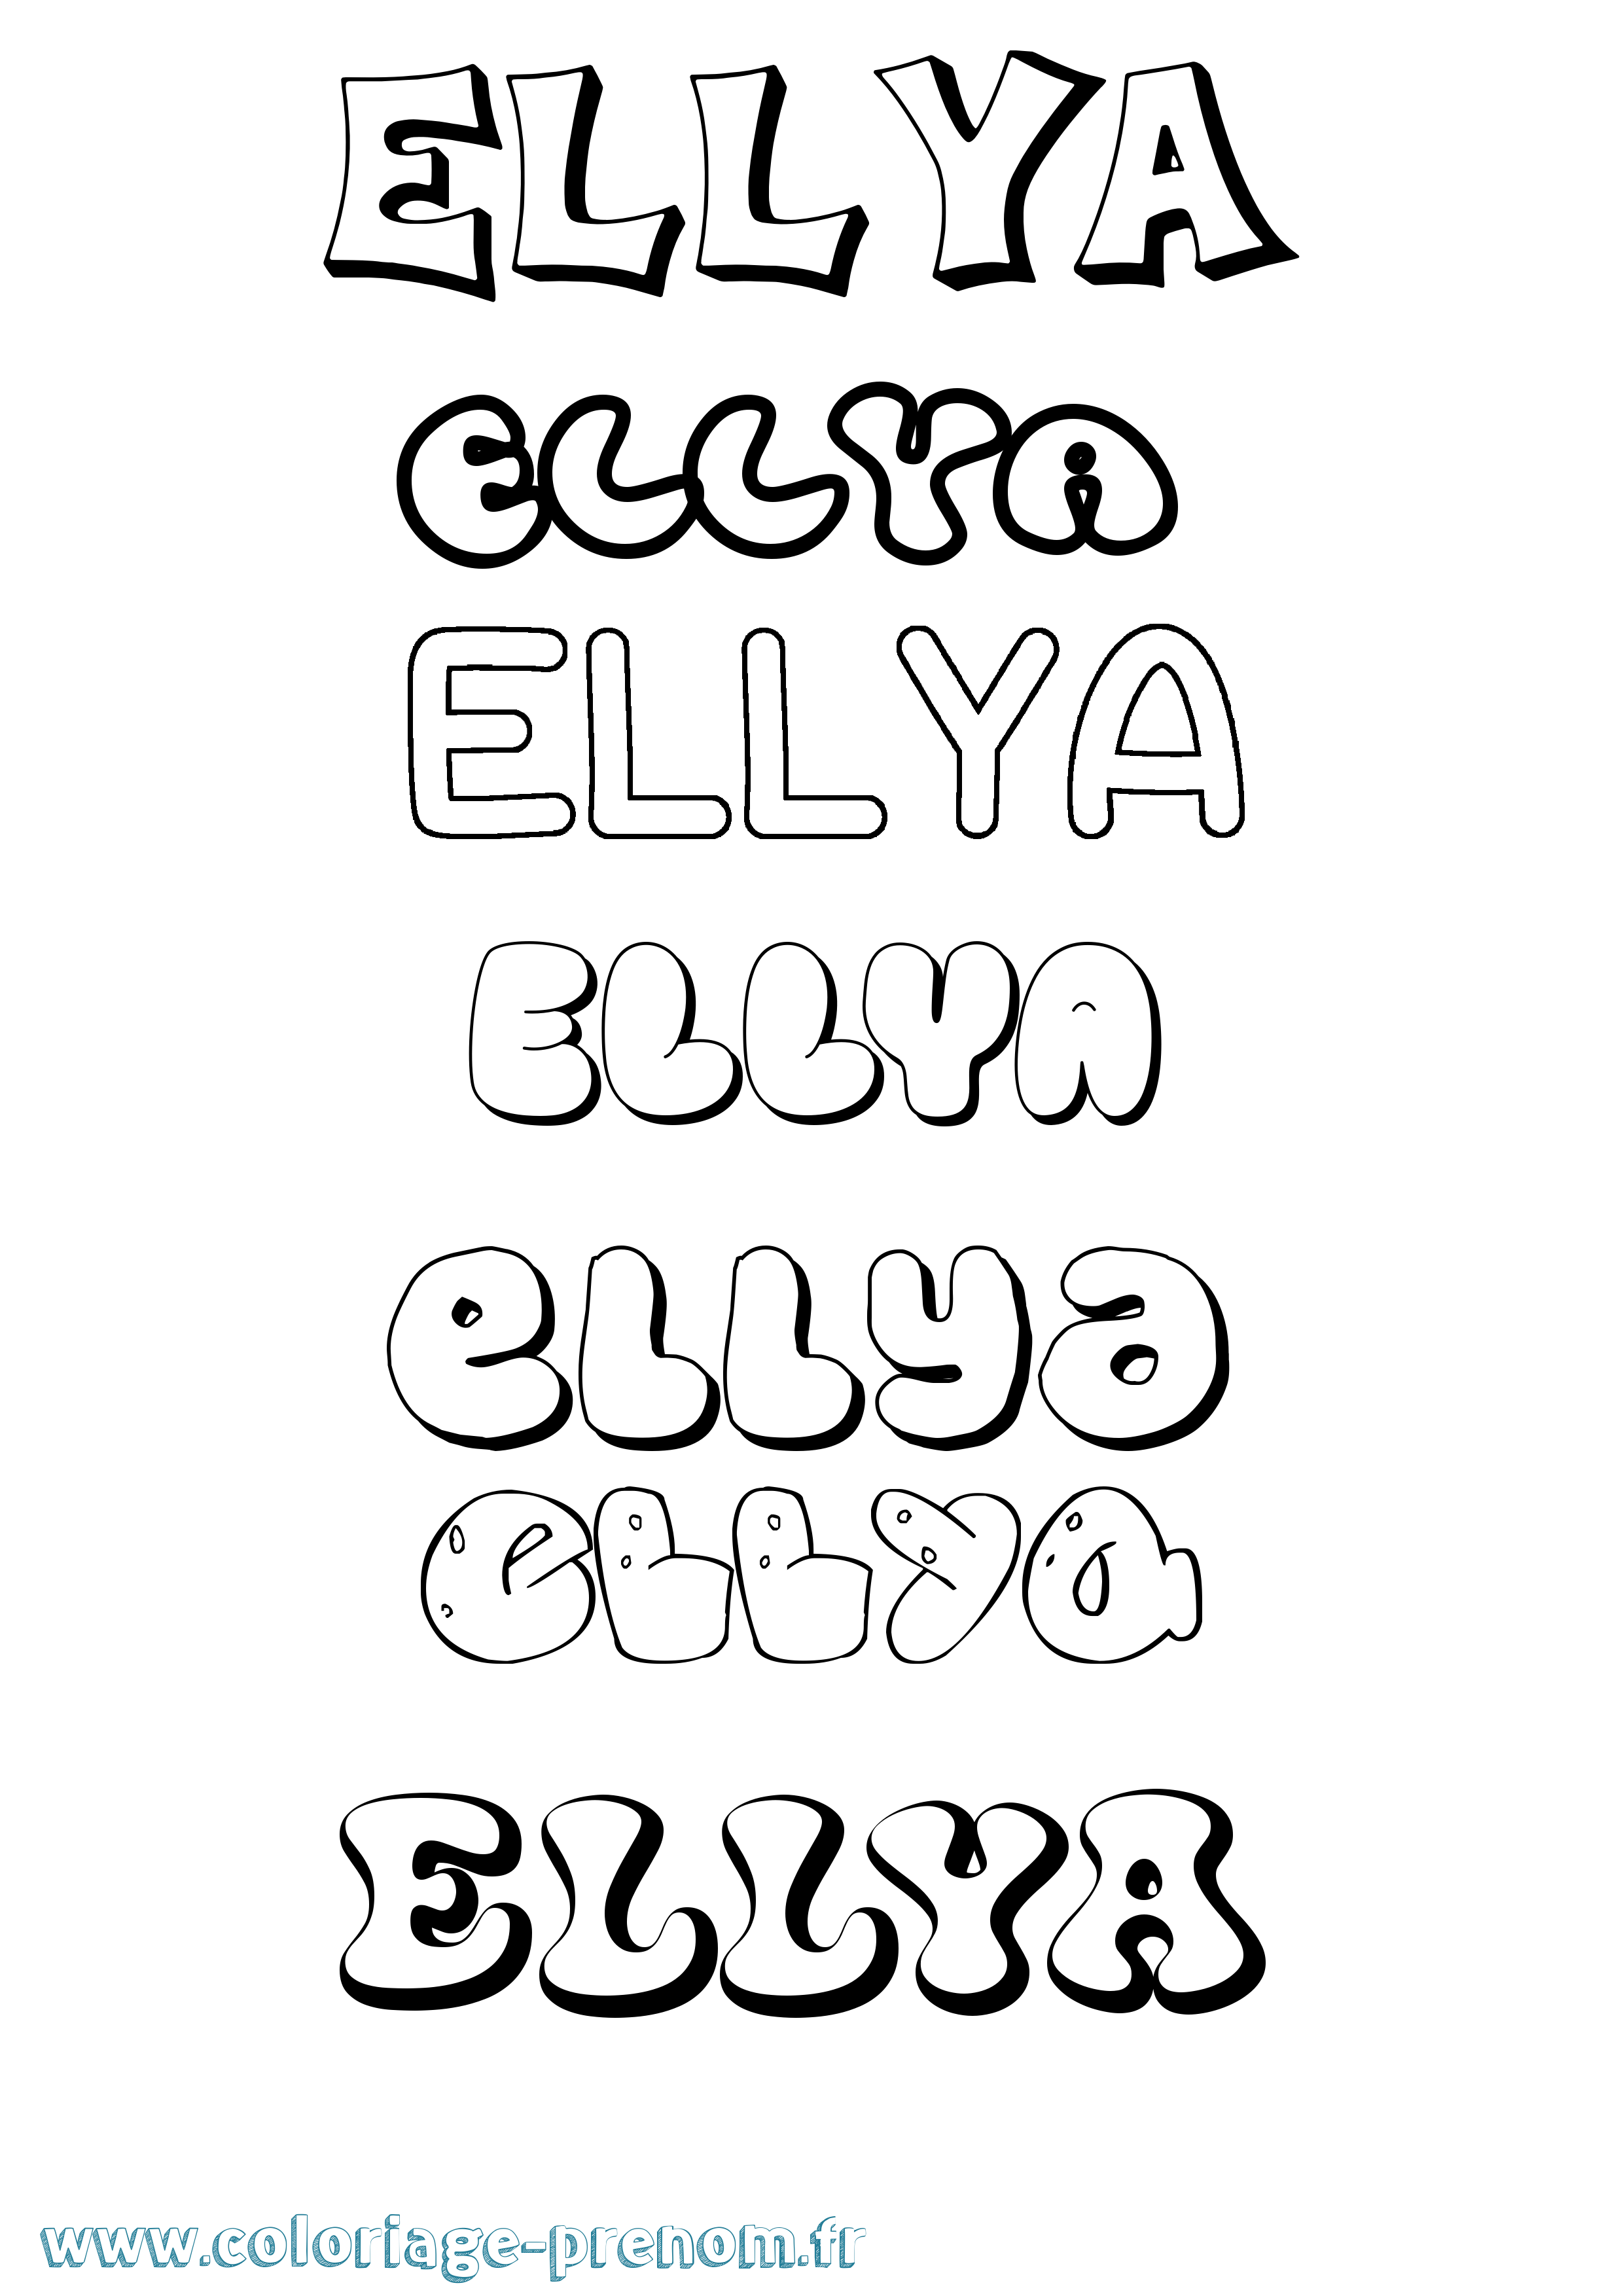 Coloriage prénom Ellya Bubble